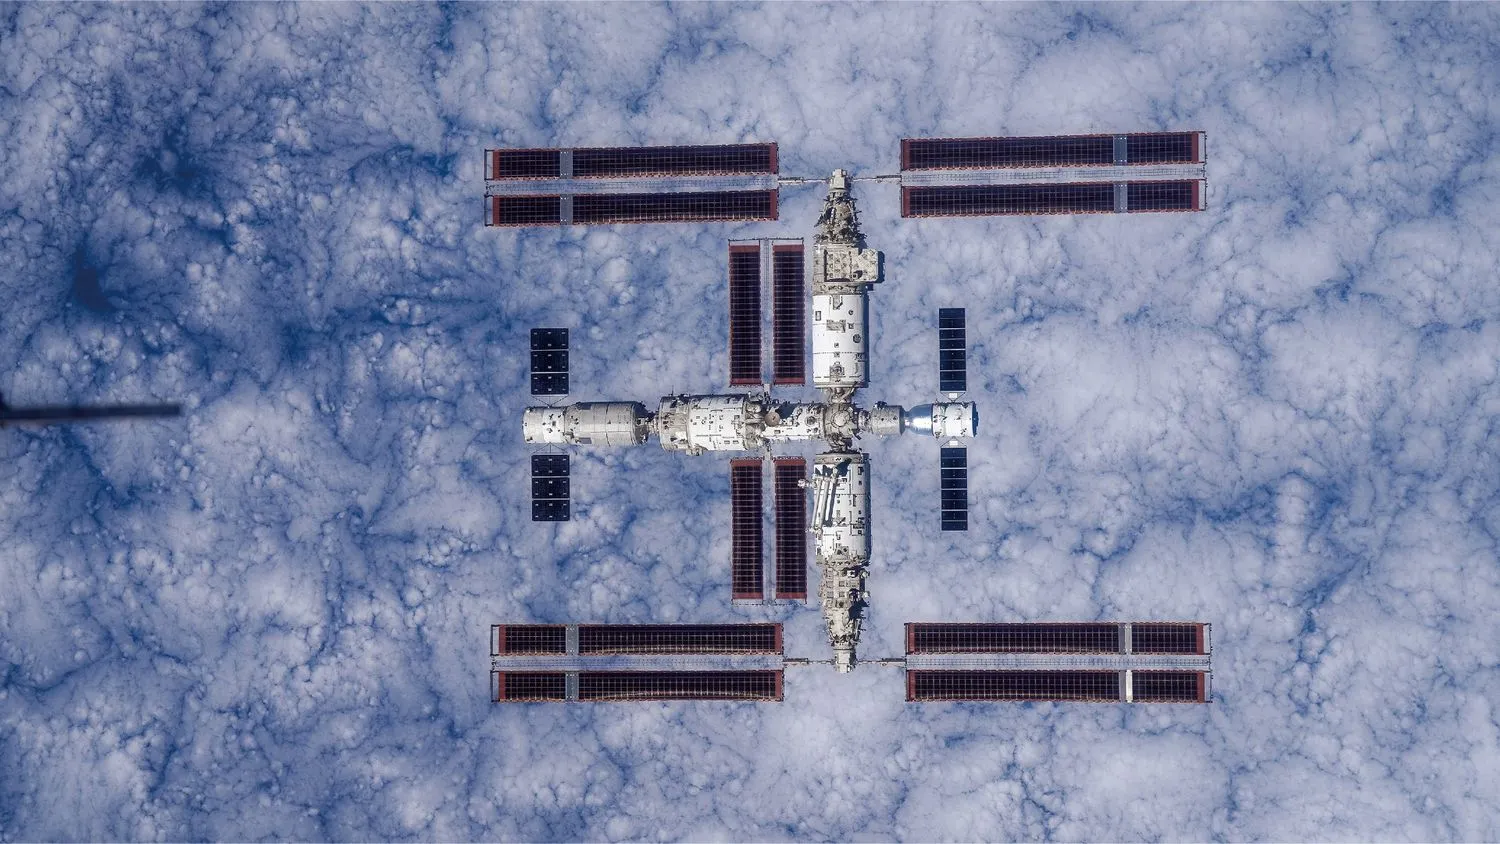 eine große T-förmige Raumstation von oben gesehen mit der Erde unter ihr